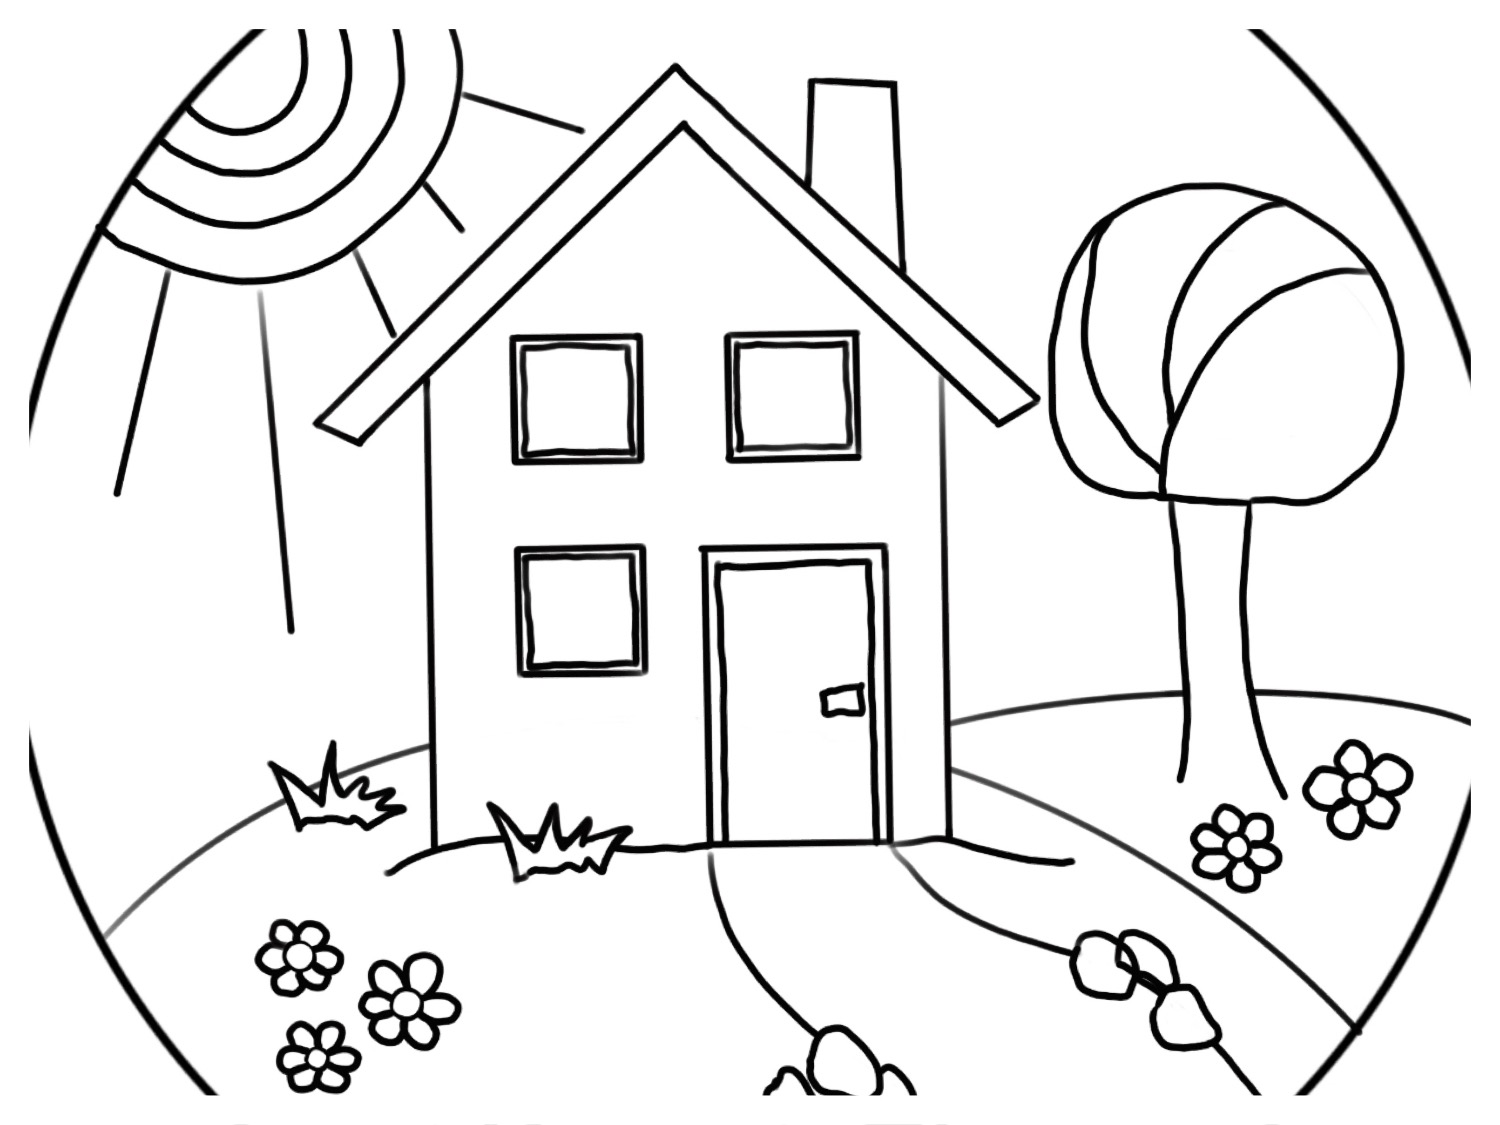 Titelbild zur Bastel- und DIY-Idee für Kinder '(698) 5 Ausmalbilder – Mandals zu Häusern'